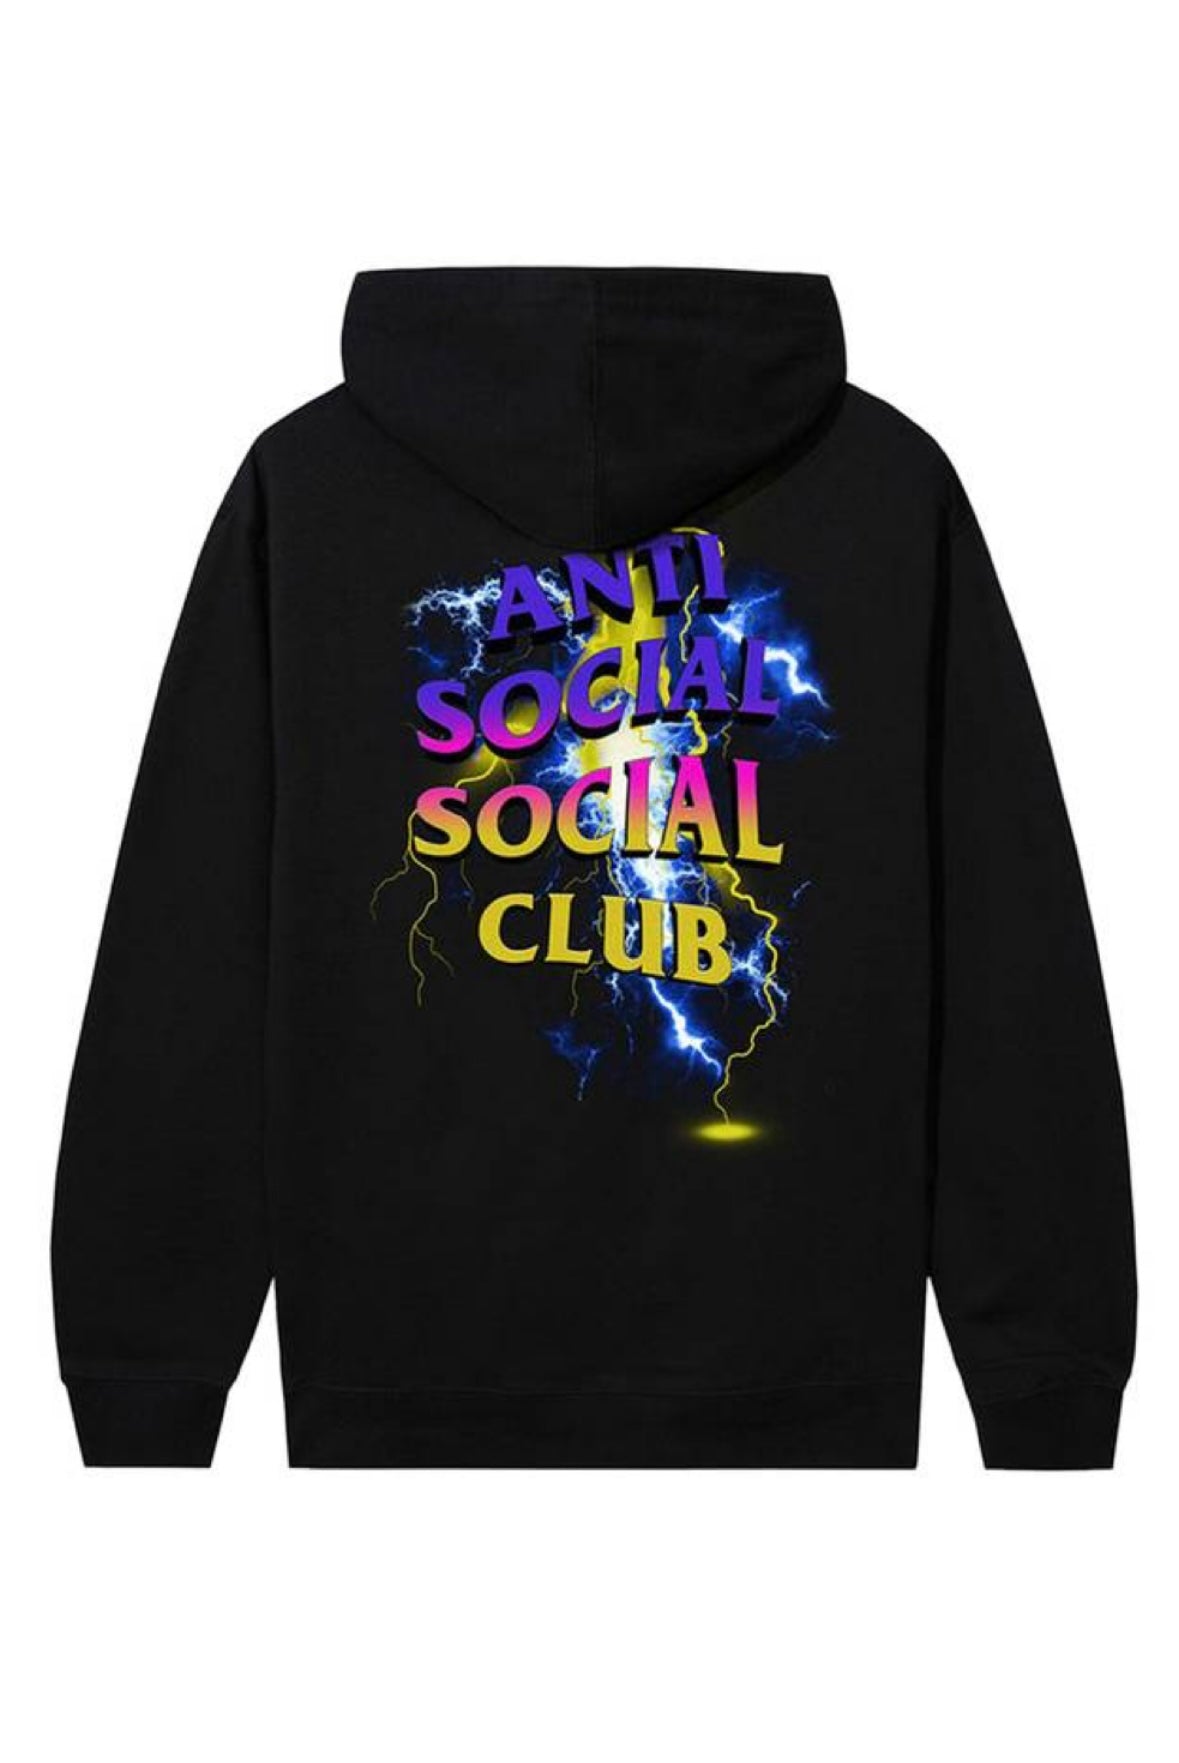 Anti Social Social Club Storm
Hoodie 'Black'